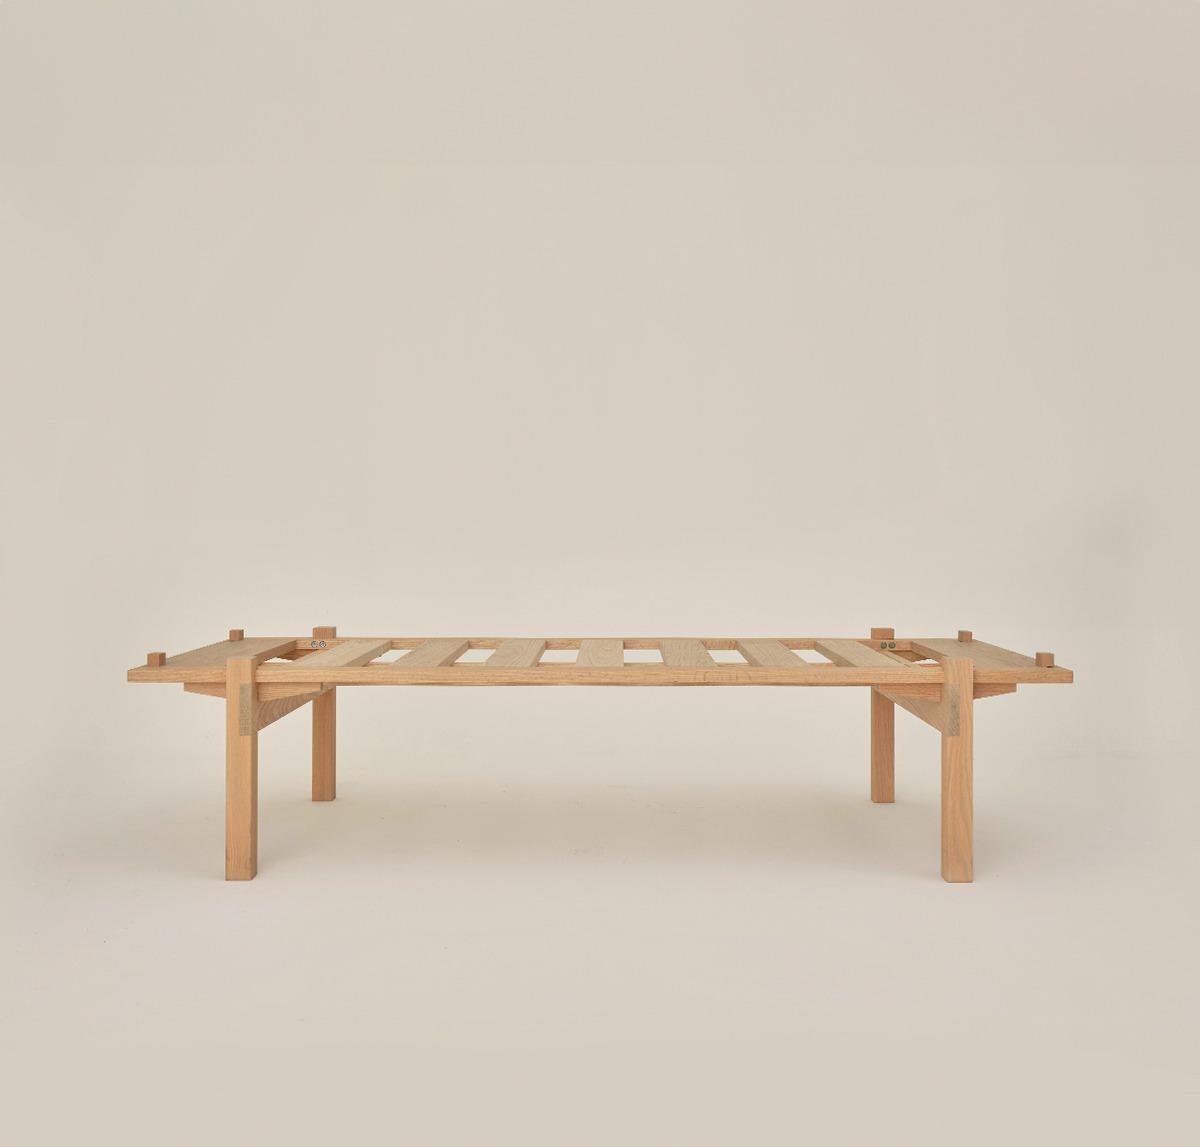 Né dans une sérénité monumentale, Daybed est un meuble qui allie confort et géométrie pure. Caractérisé par son aspect structurel, il s'agit d'un équilibre entre lignes horizontales et verticales avec une esthétique japonaise.

Avec la considération